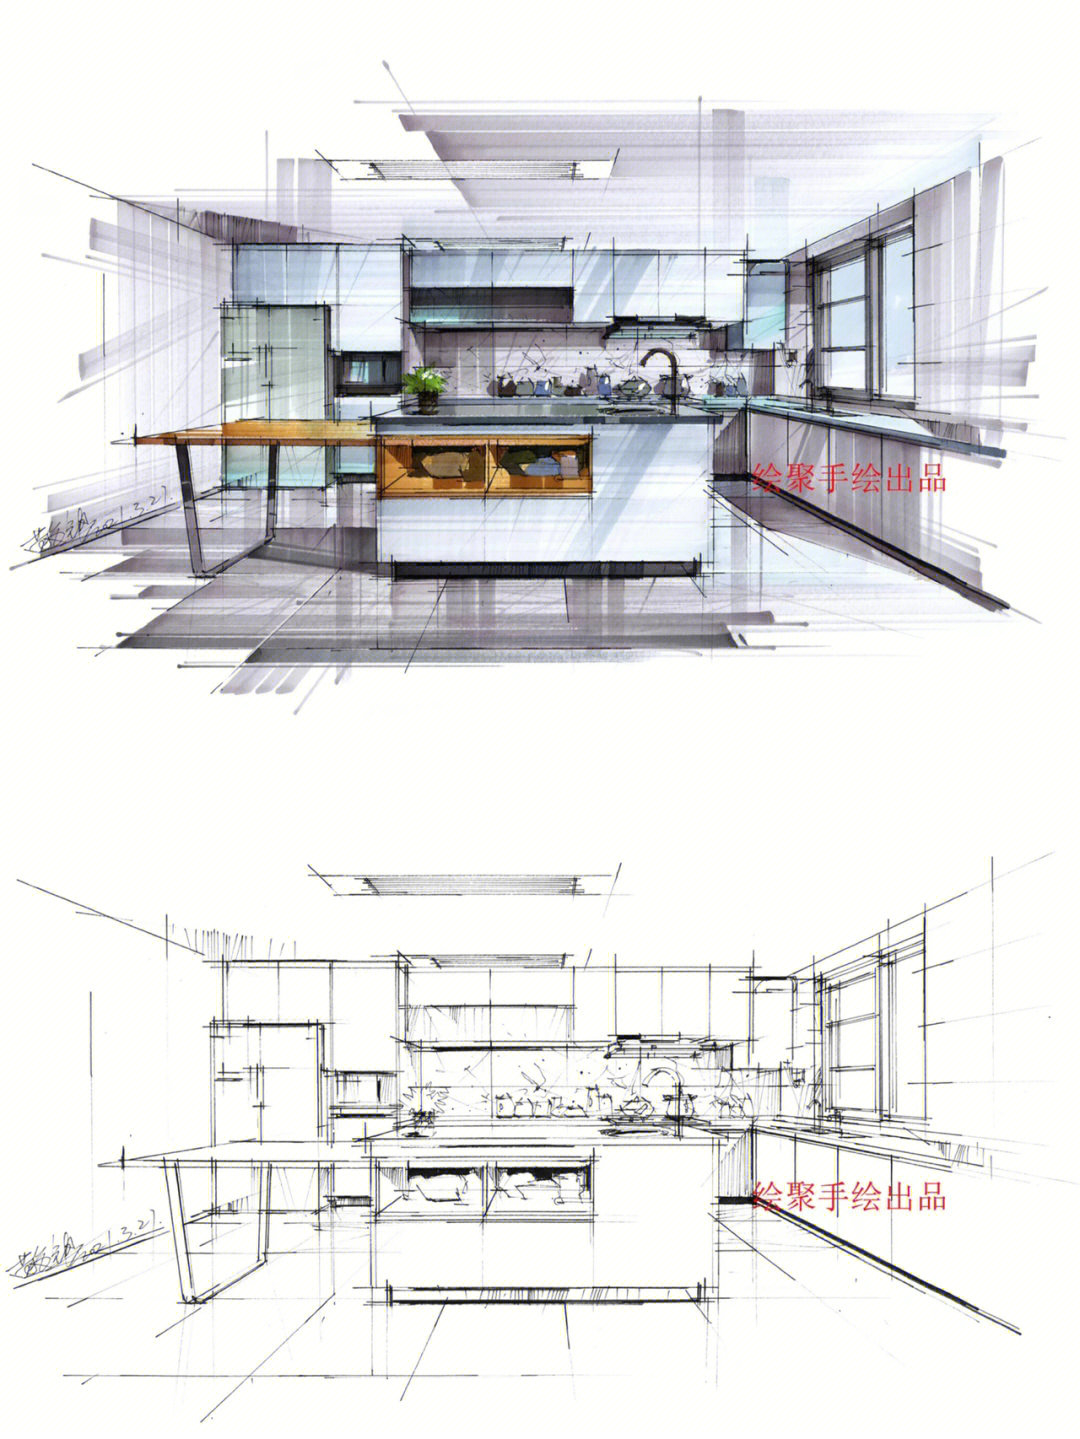 室内厨房手绘效果图线稿上色对比